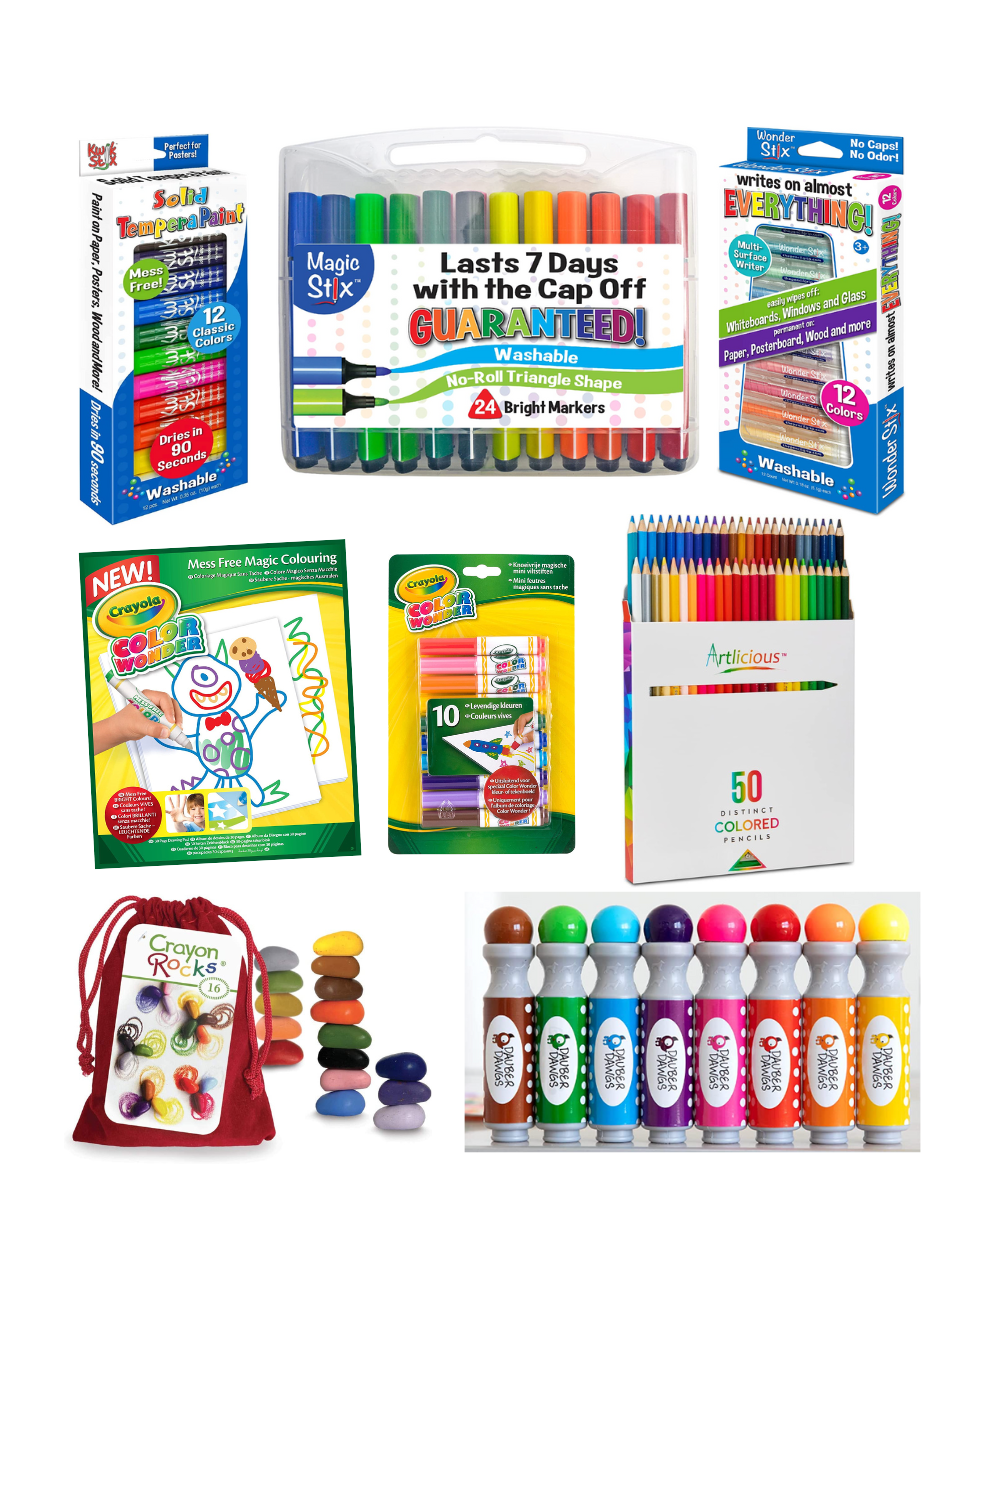 12pcs Colored Chalk (6 Colors) For Kids' Education, Teachers, Dustless Chalk